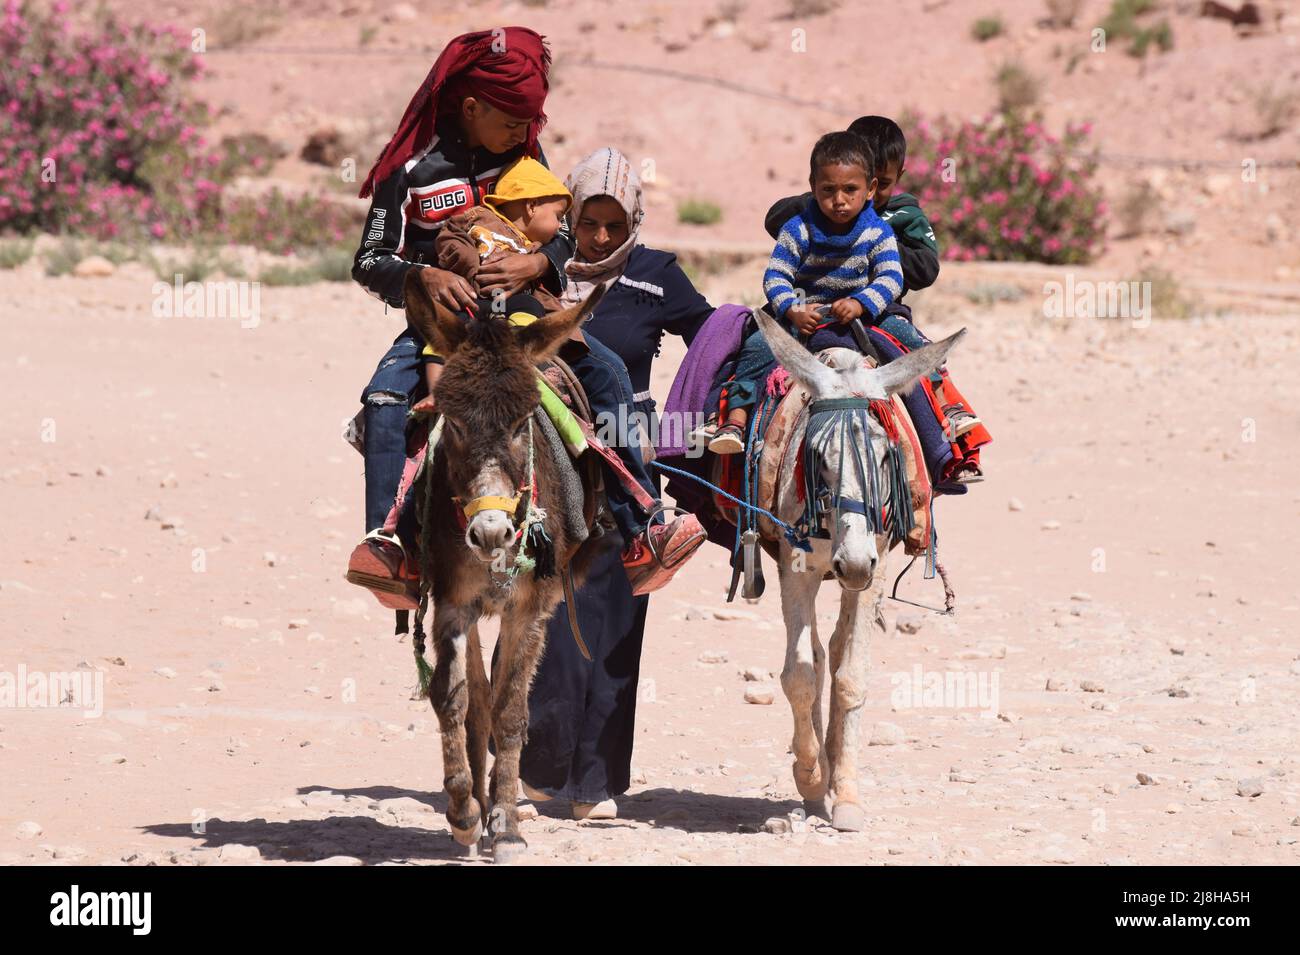 Una famiglia bedul beduina con un bambino e bambini molto piccoli che viaggiano su 2 asini attraverso l'antica città perduta di Petra in Giordania in Medio Oriente Foto Stock